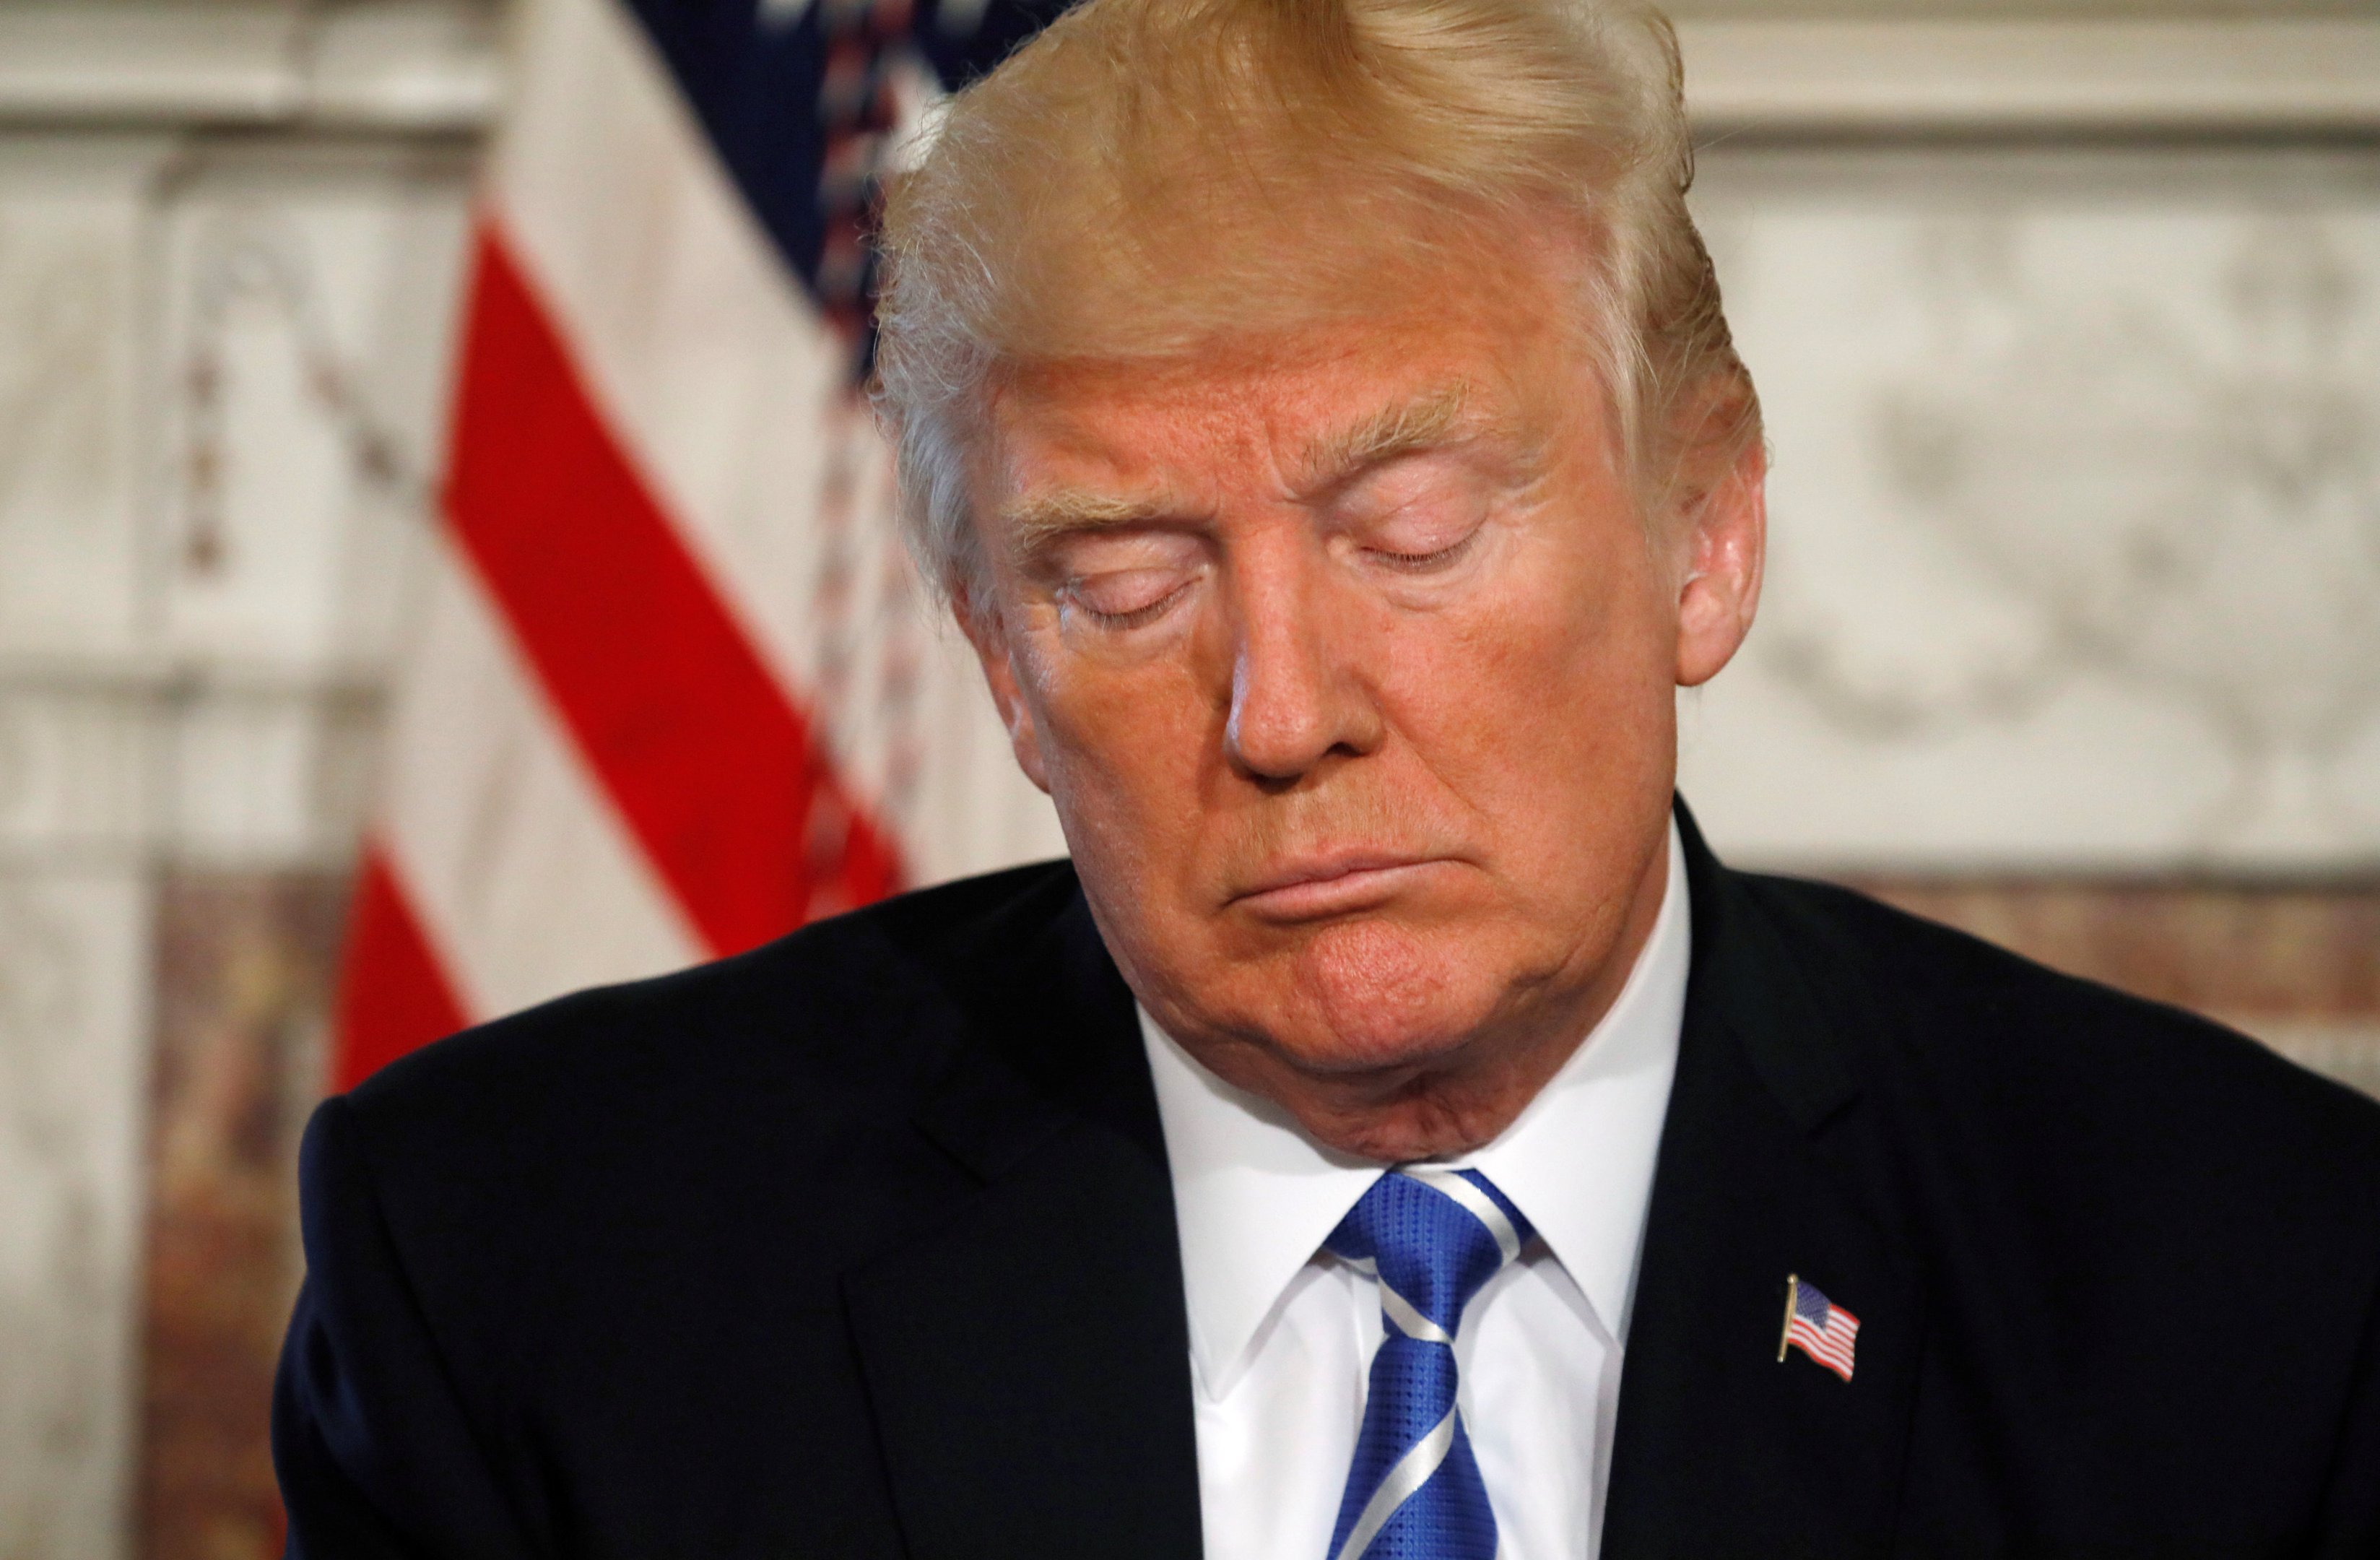 Seria um dia triste", diz Trump sobre ataque na Coreia do Norte | Exame